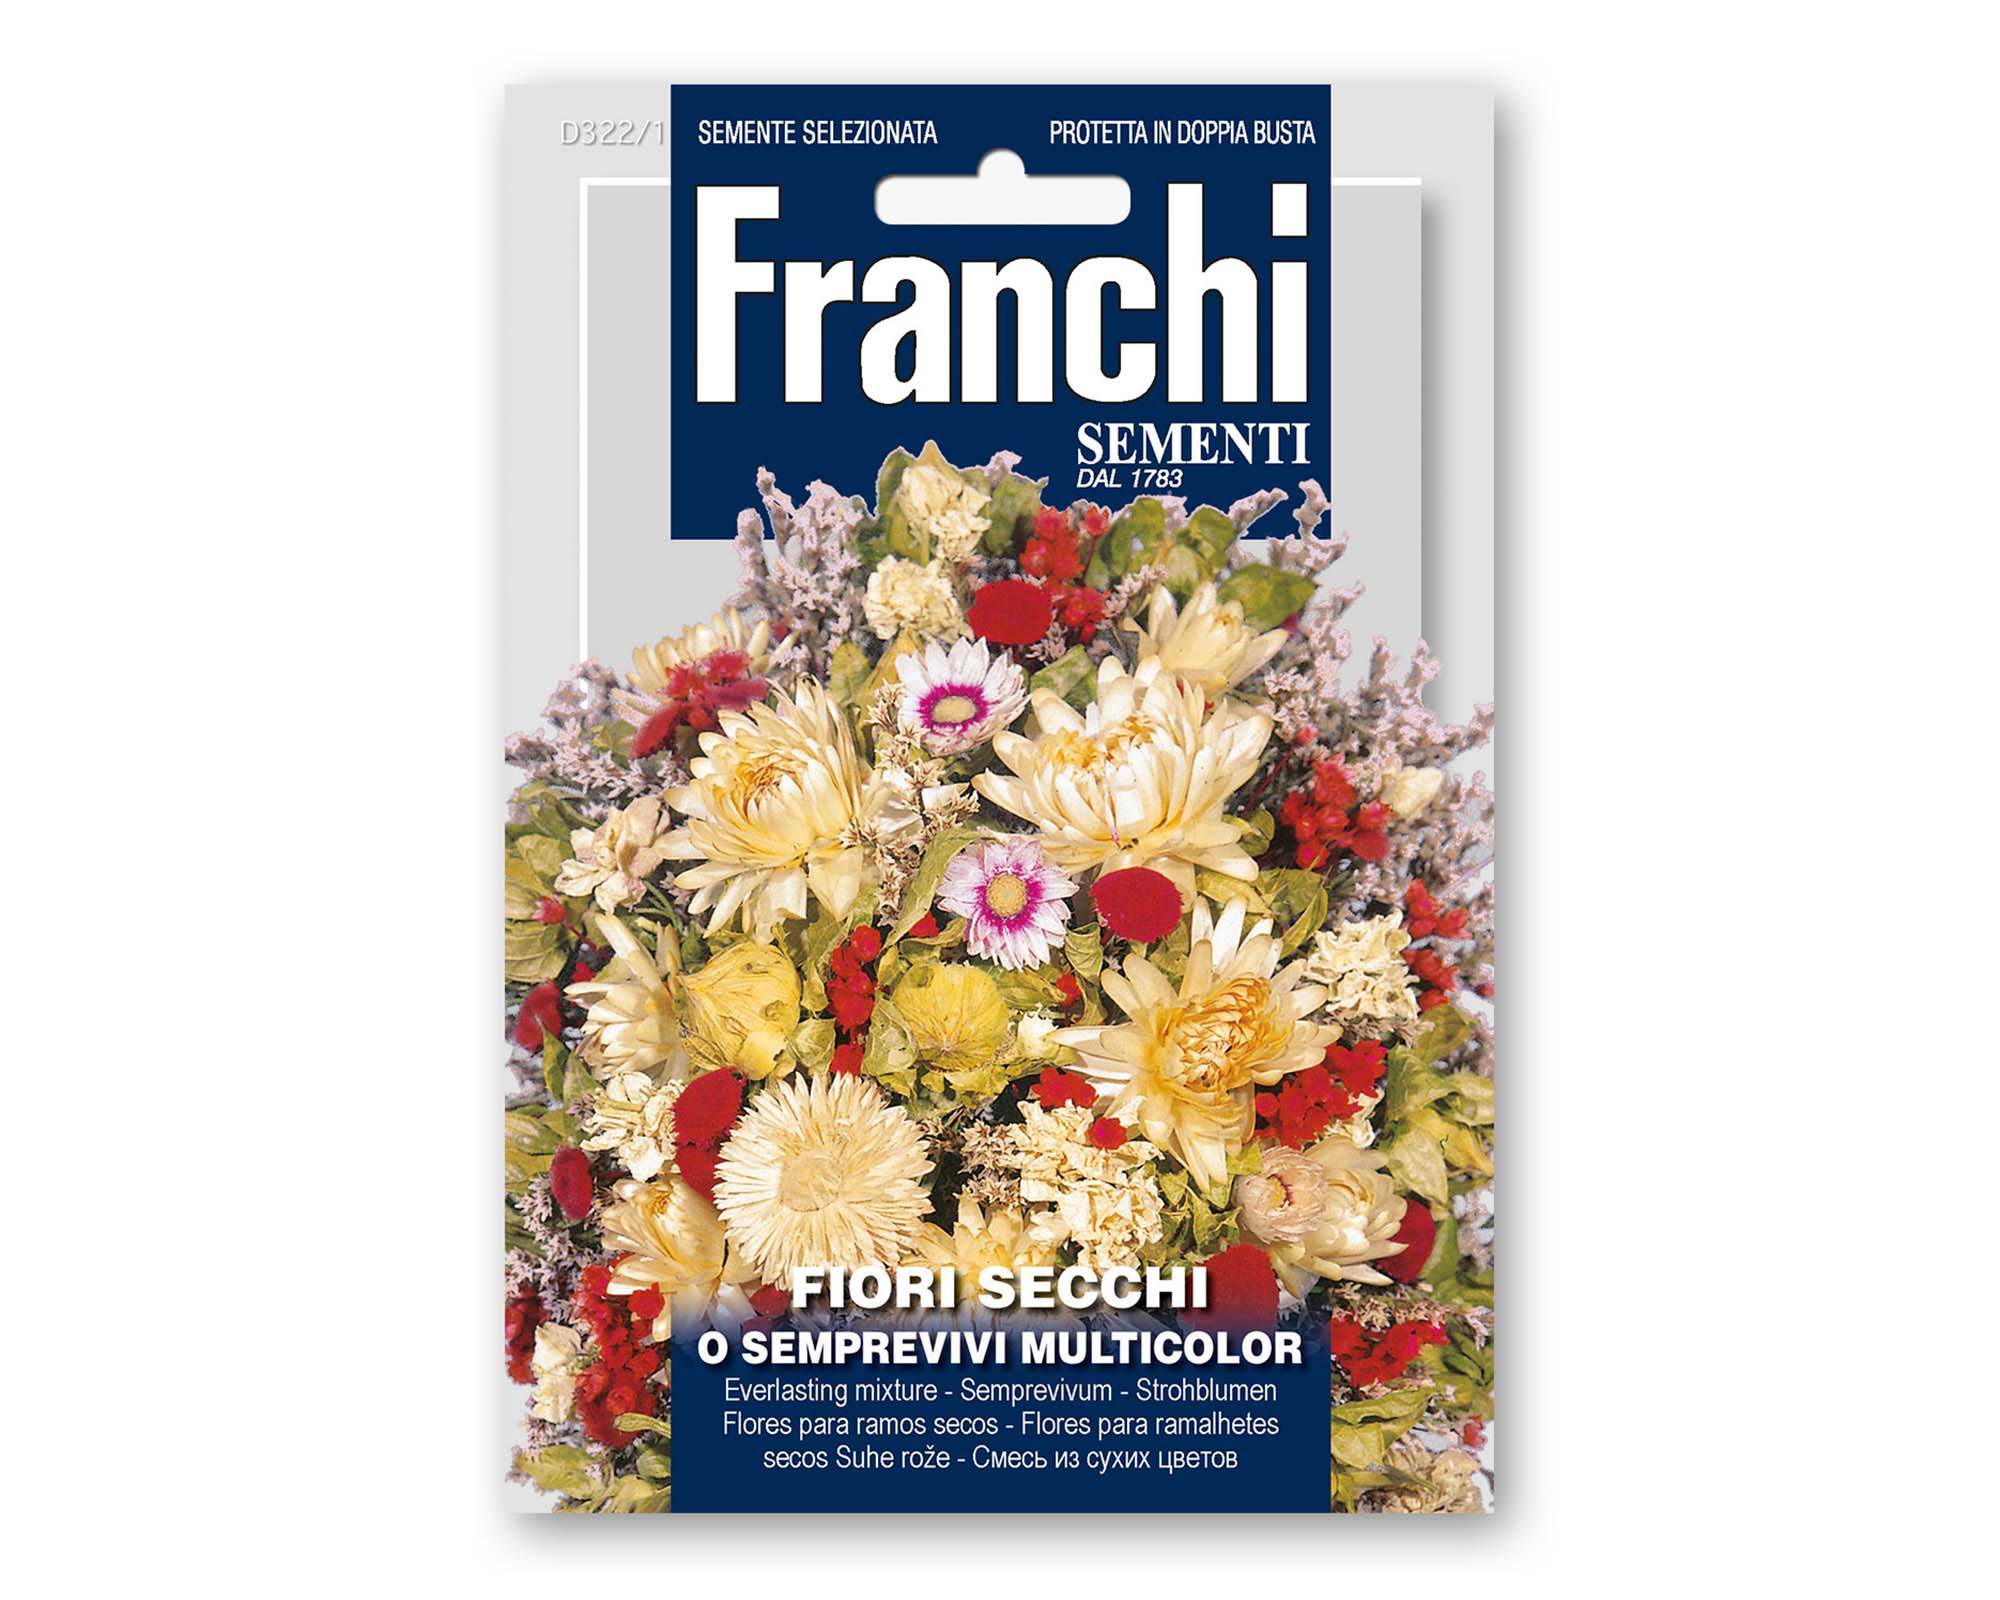 Semi di Fiori Secchi (Semprevivi) Multicolor - Franchi sementi -  FloralGarden